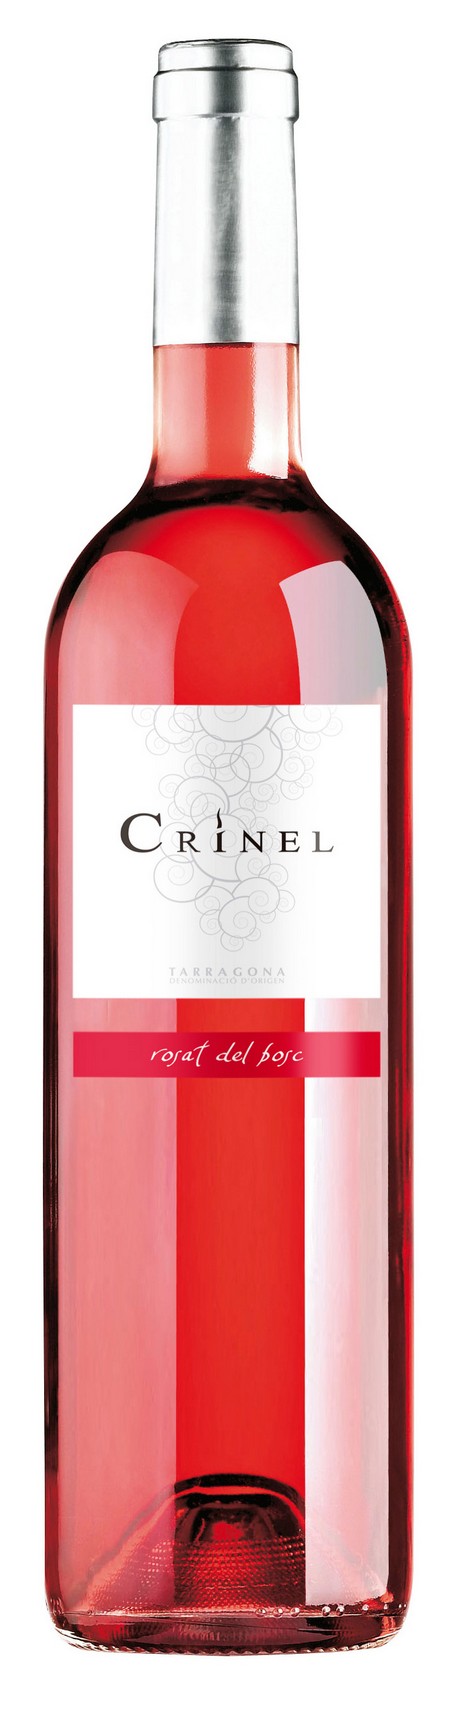 crinel-rosat-del-bosc-2014